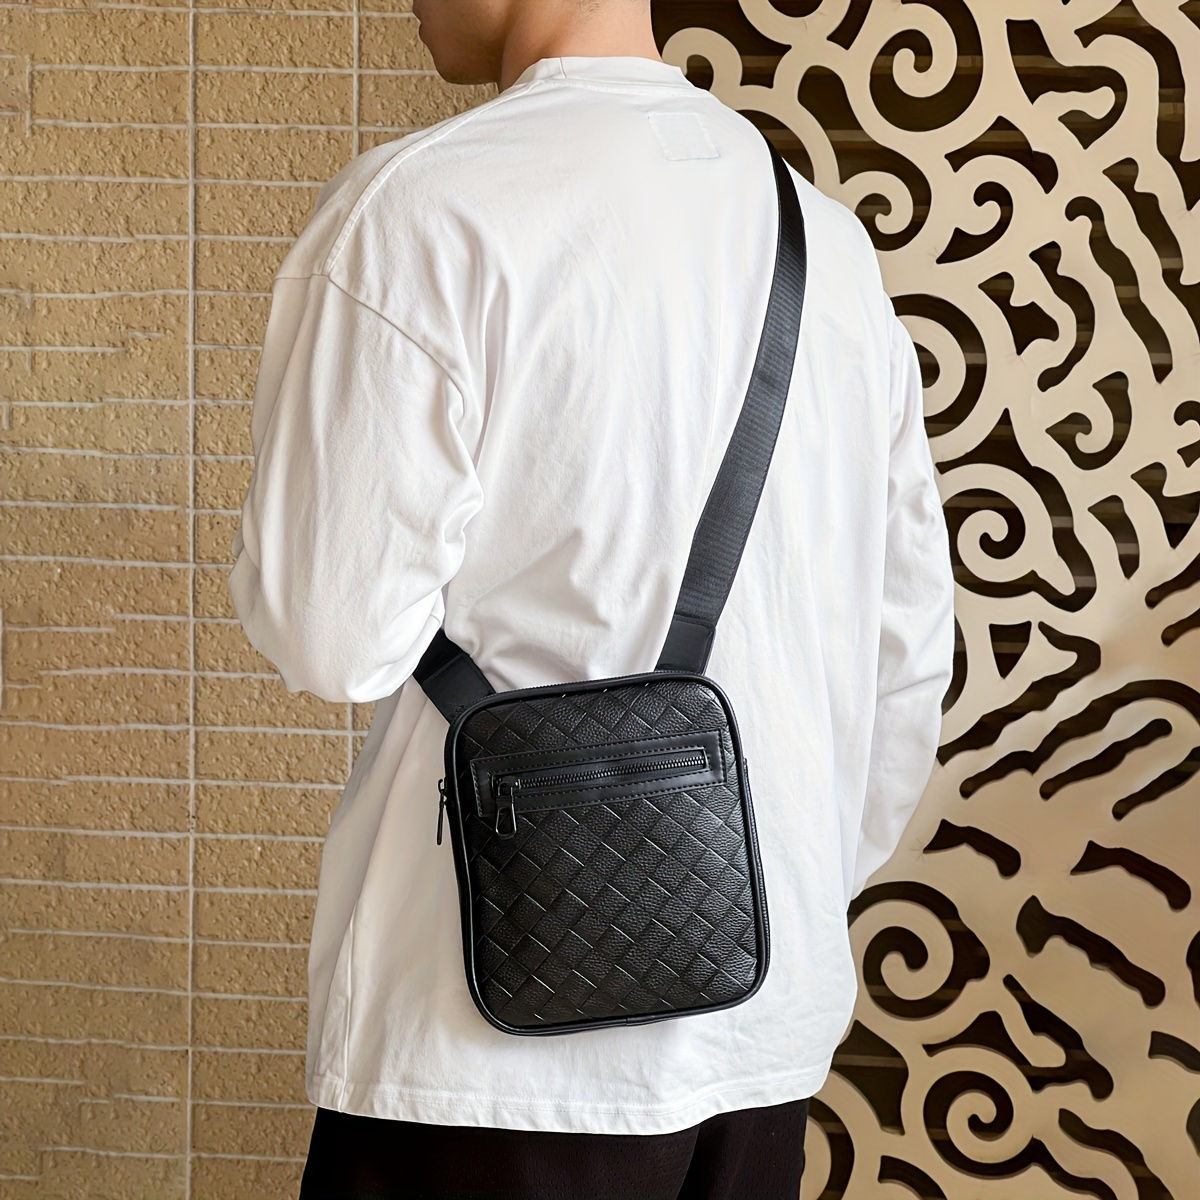 Carhartt Fashion Bag Travel Bag Square Shoulder Bag Men Women Handbag Hip  Hop Messenger Bag Oxford